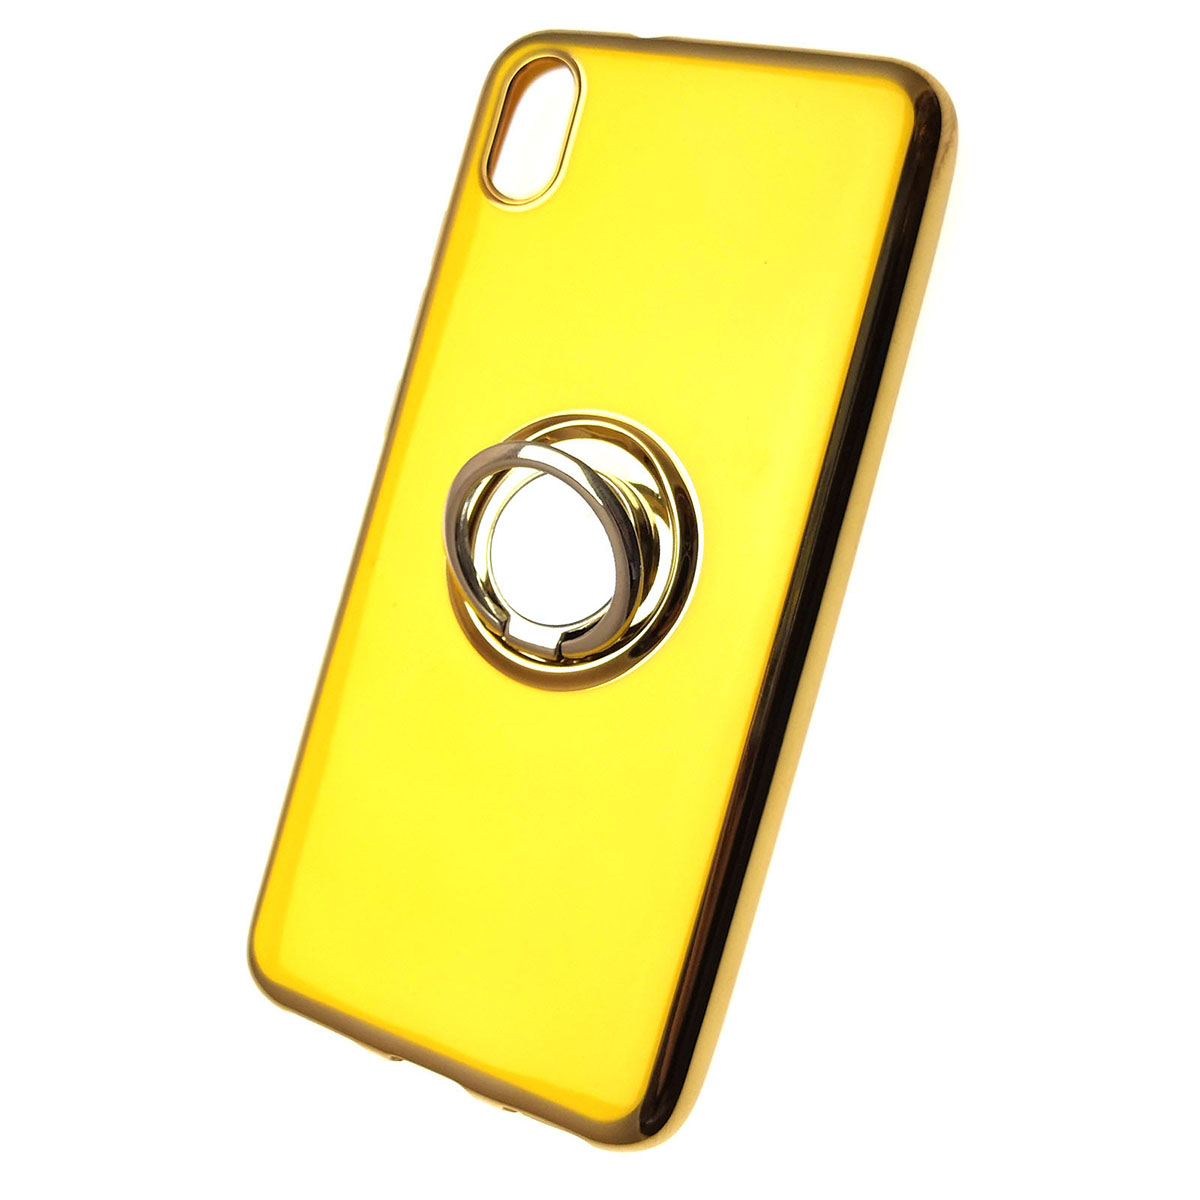 Чехол накладка для XIAOMI Redmi 7A, силикон, кольцом держатель, цвет желтый.